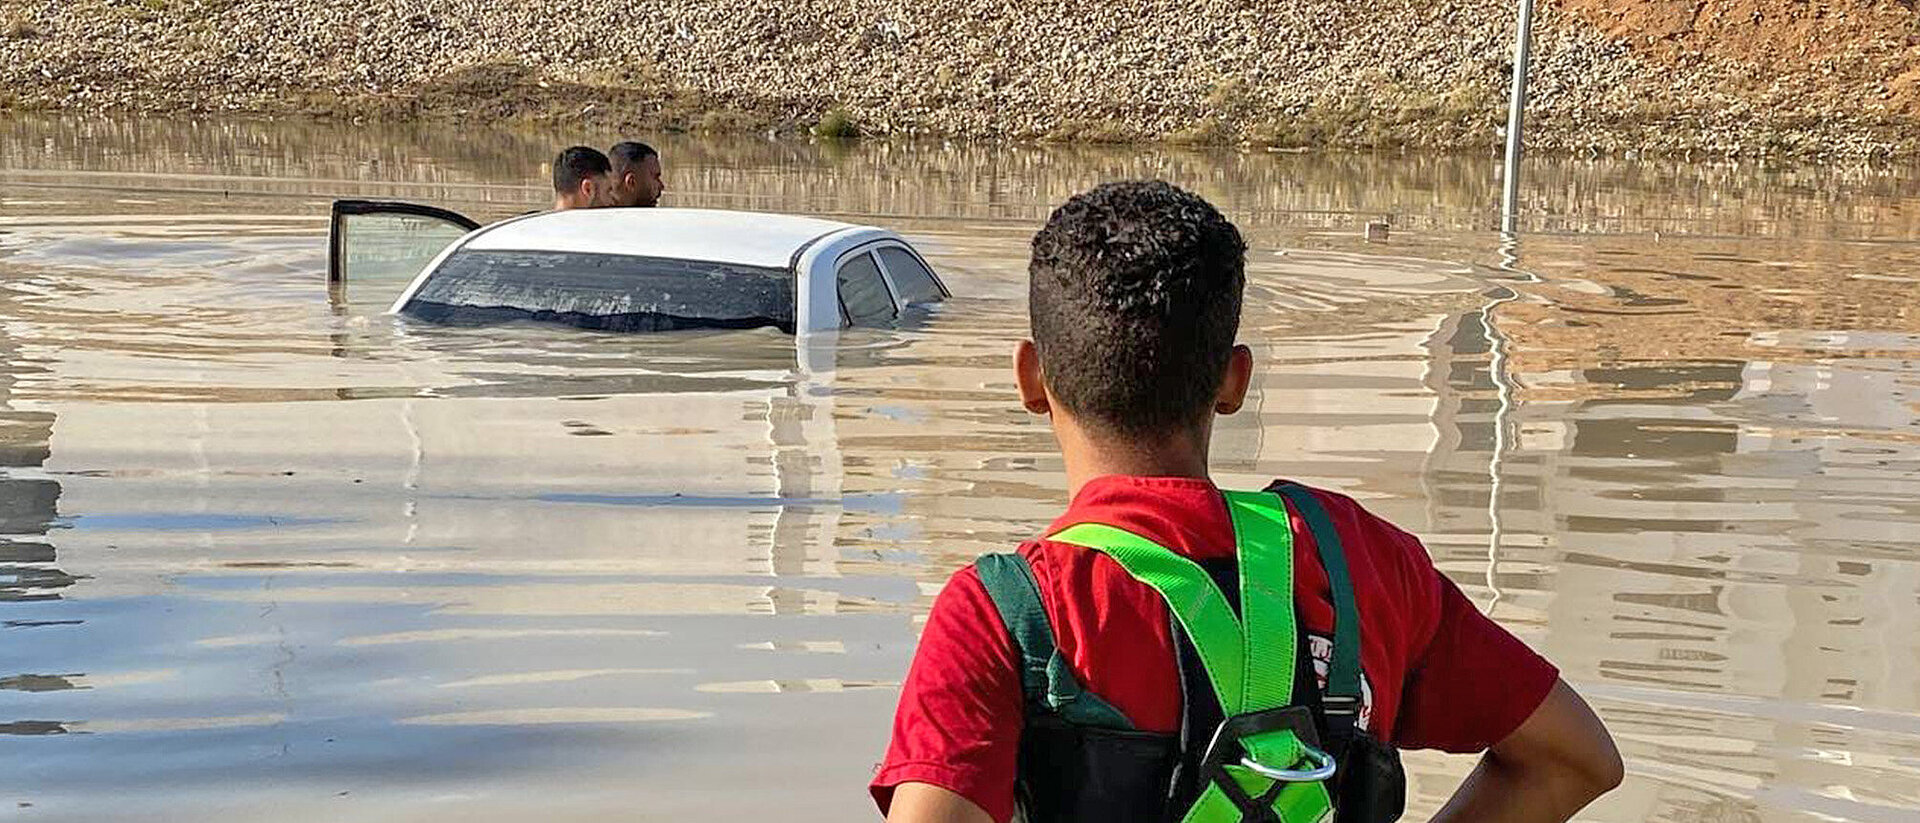 Menschen neben einem Auto im Hochwasser nach Unwetter in Libyen